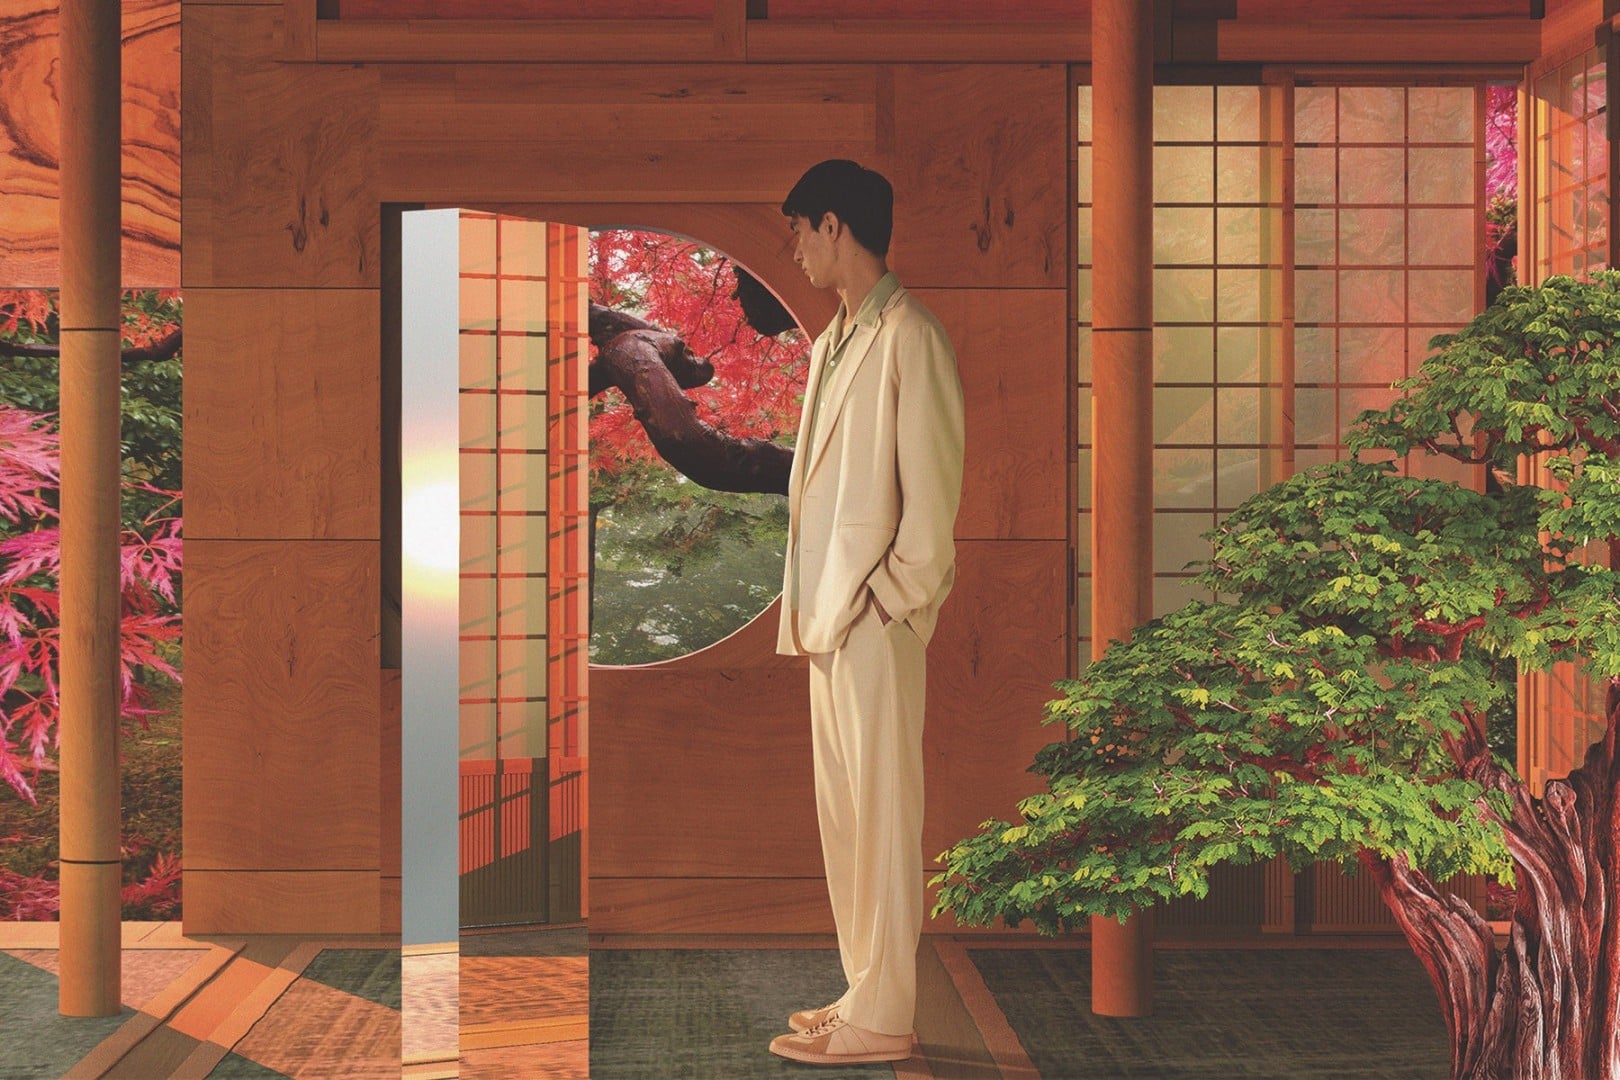 # MR PORTER「The Japan Edit」：聯手 15 個極具影響力日牌推出獨家合作系列 1